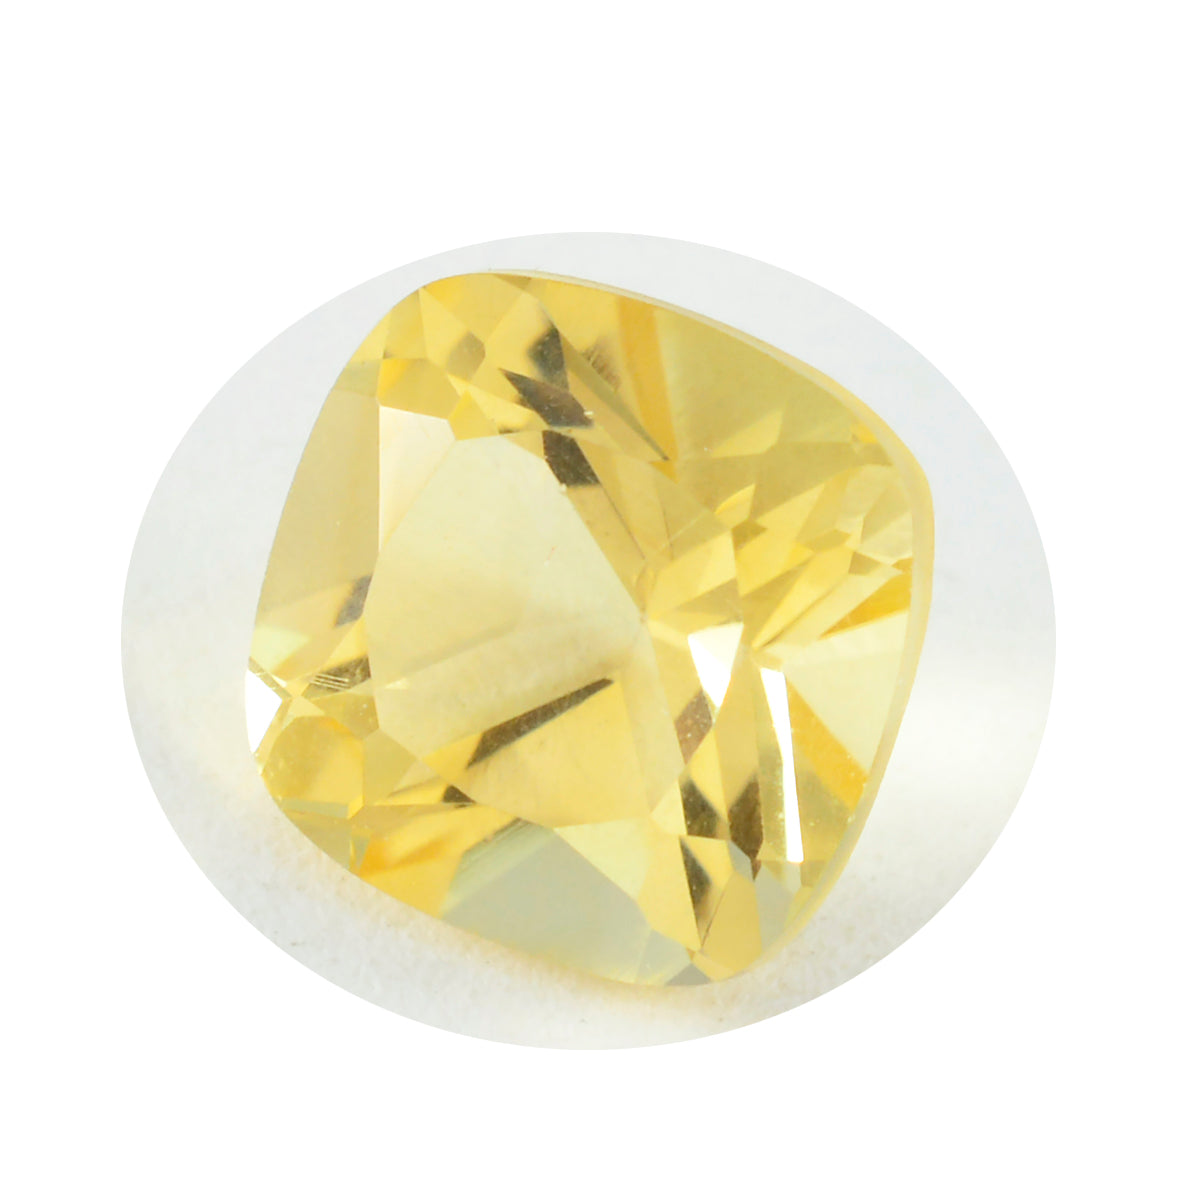 riyogems 1 шт. натуральный желтый цитрин ограненный 13x13 мм в форме подушки привлекательные качественные драгоценные камни